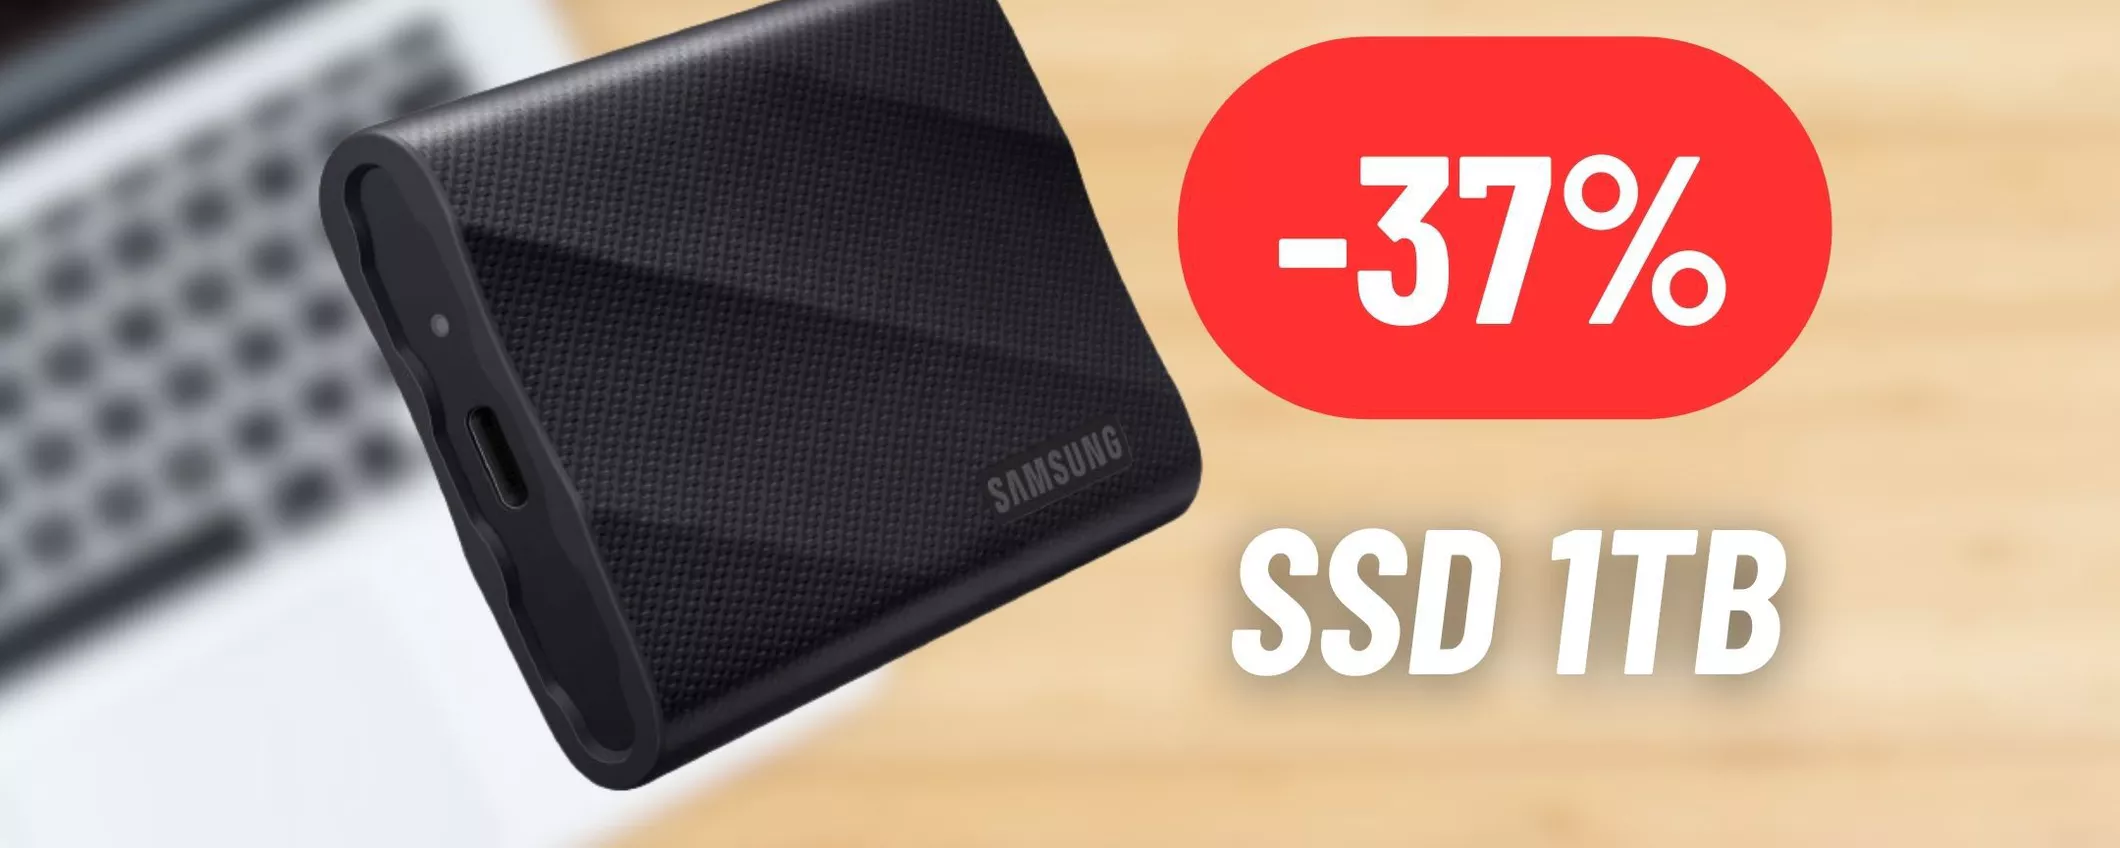 SSD esterno Samsung da 1TB in maxi offerta su Amazon: SCONTATISSIMO